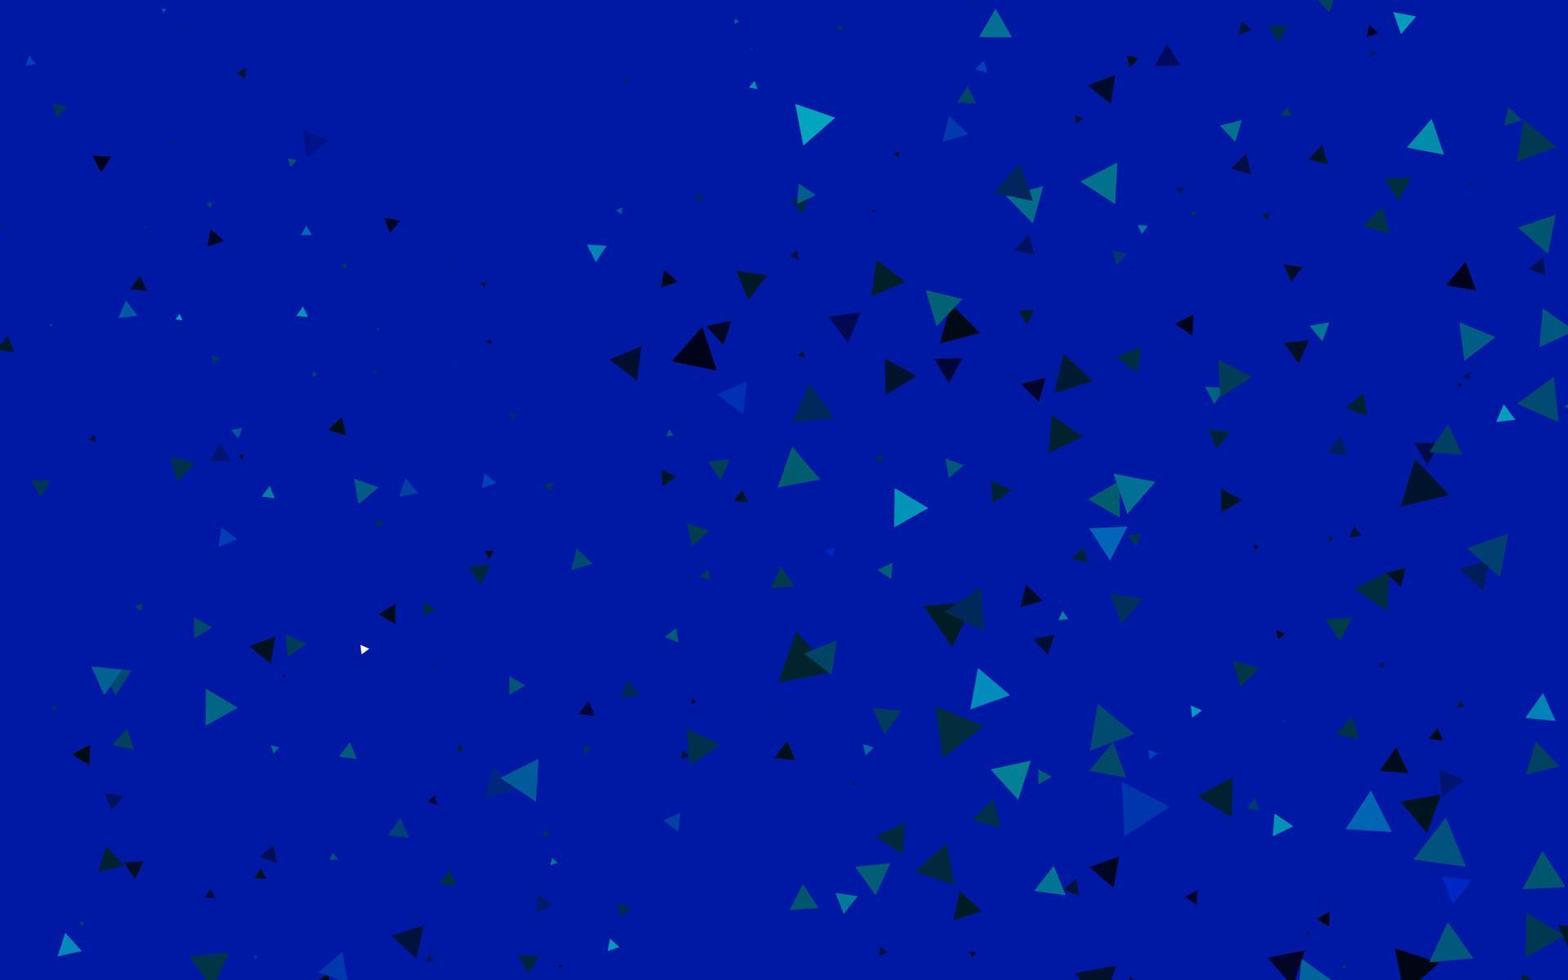 hellblauer Vektorhintergrund mit Dreiecken. vektor